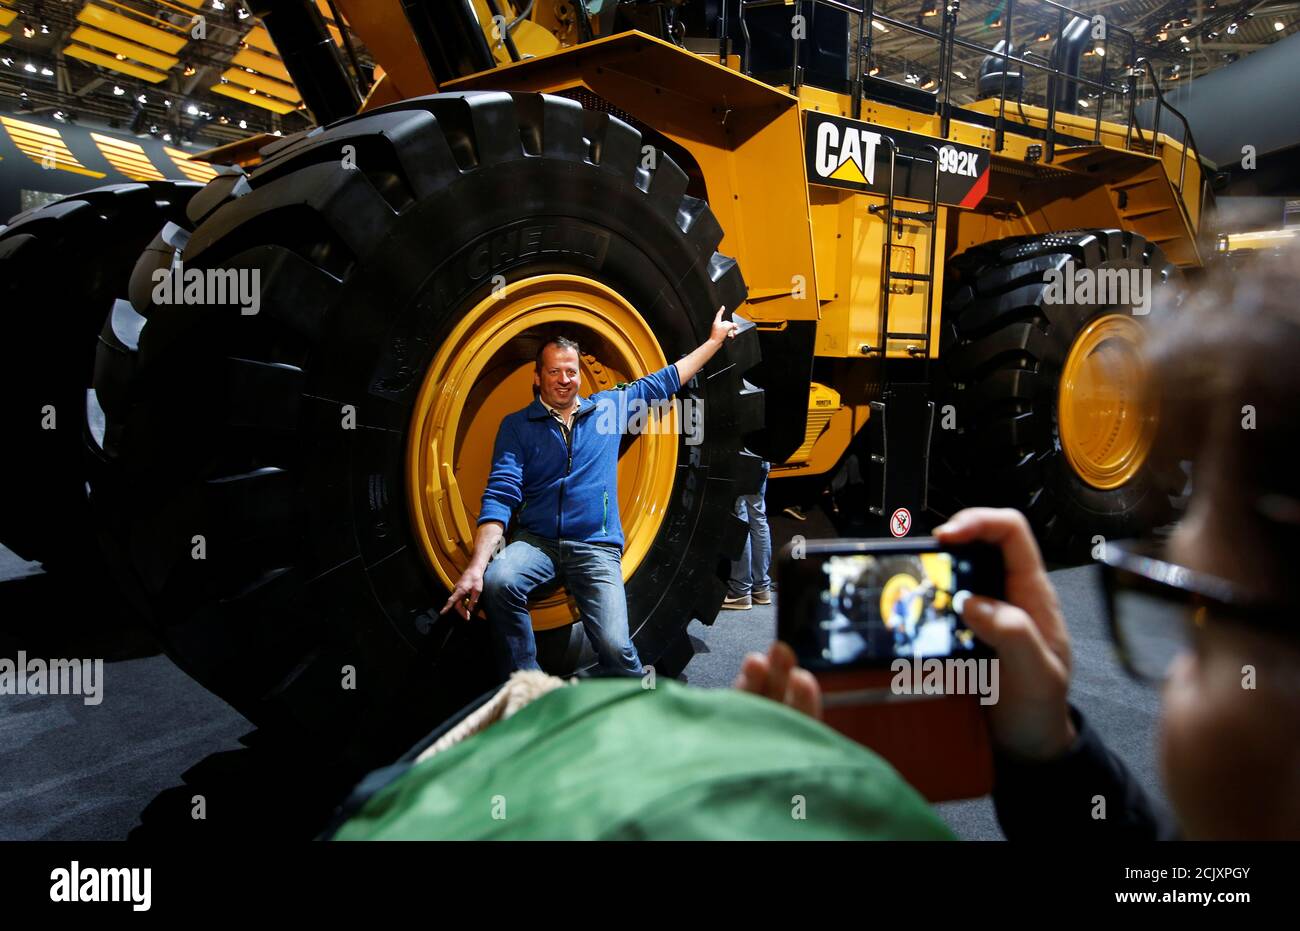 Un uomo si pone su una ruota di un escavatore Caterpillar alla fiera  "Bauma" per macchine da costruzione, macchine per materiali edili, macchine  per miniera, veicoli per l'edilizia e attrezzature per l'edilizia